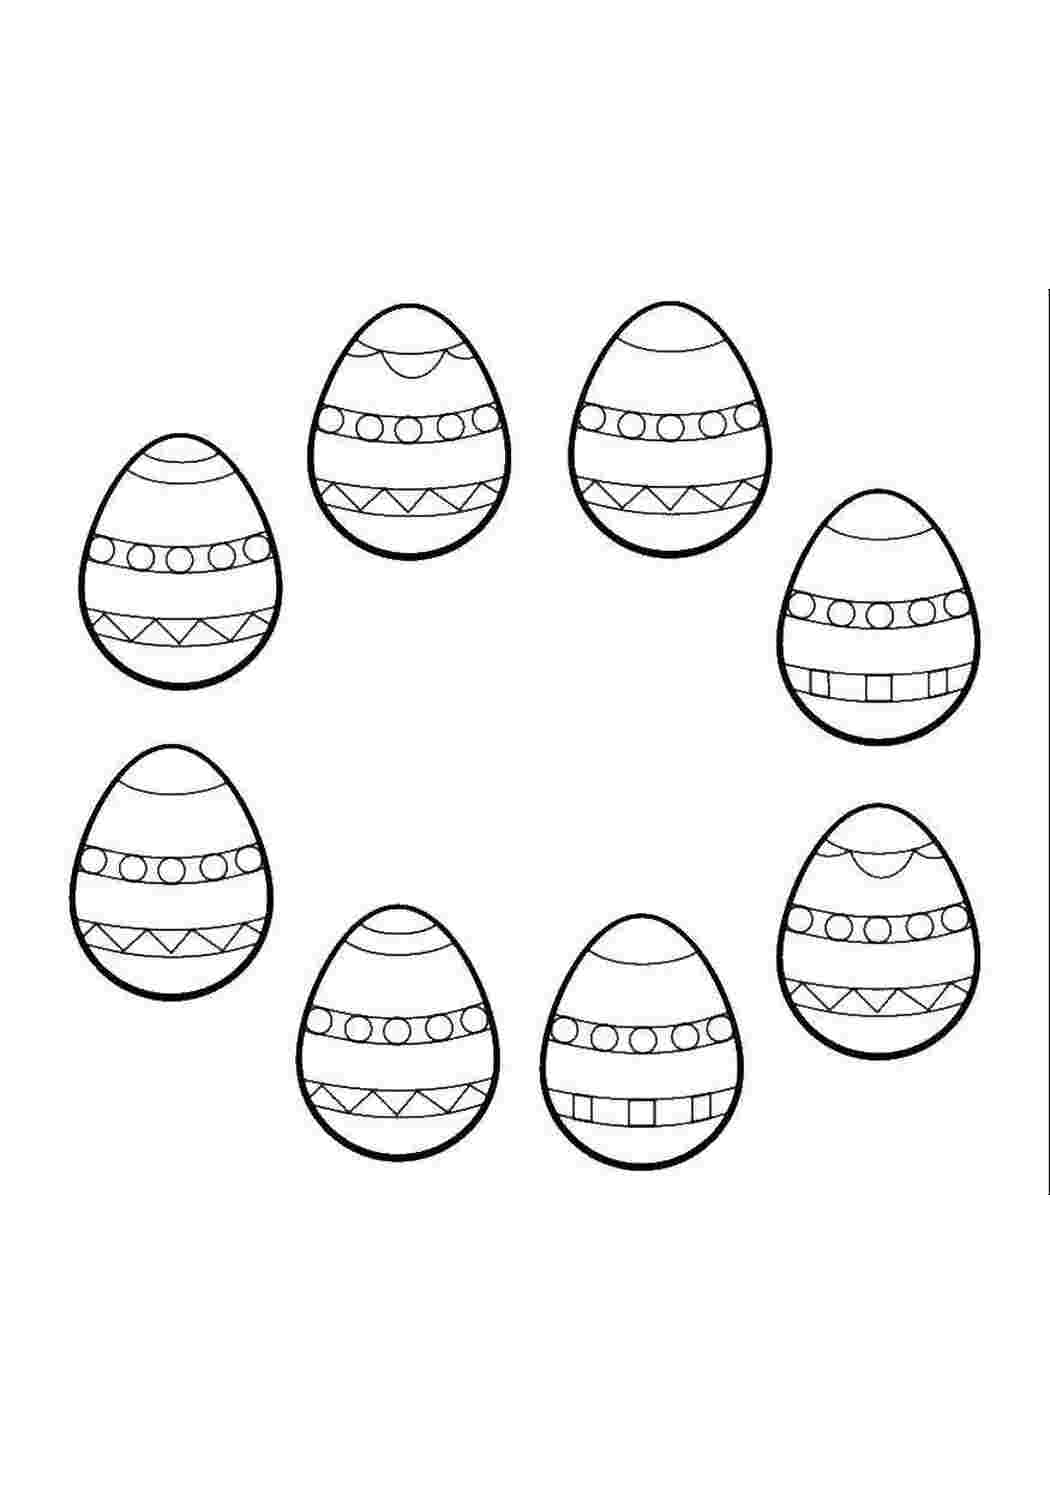 Раскраски Найди одинаковые яйца и раскрась их пасхальные яйца Пасха, яйца, узоры